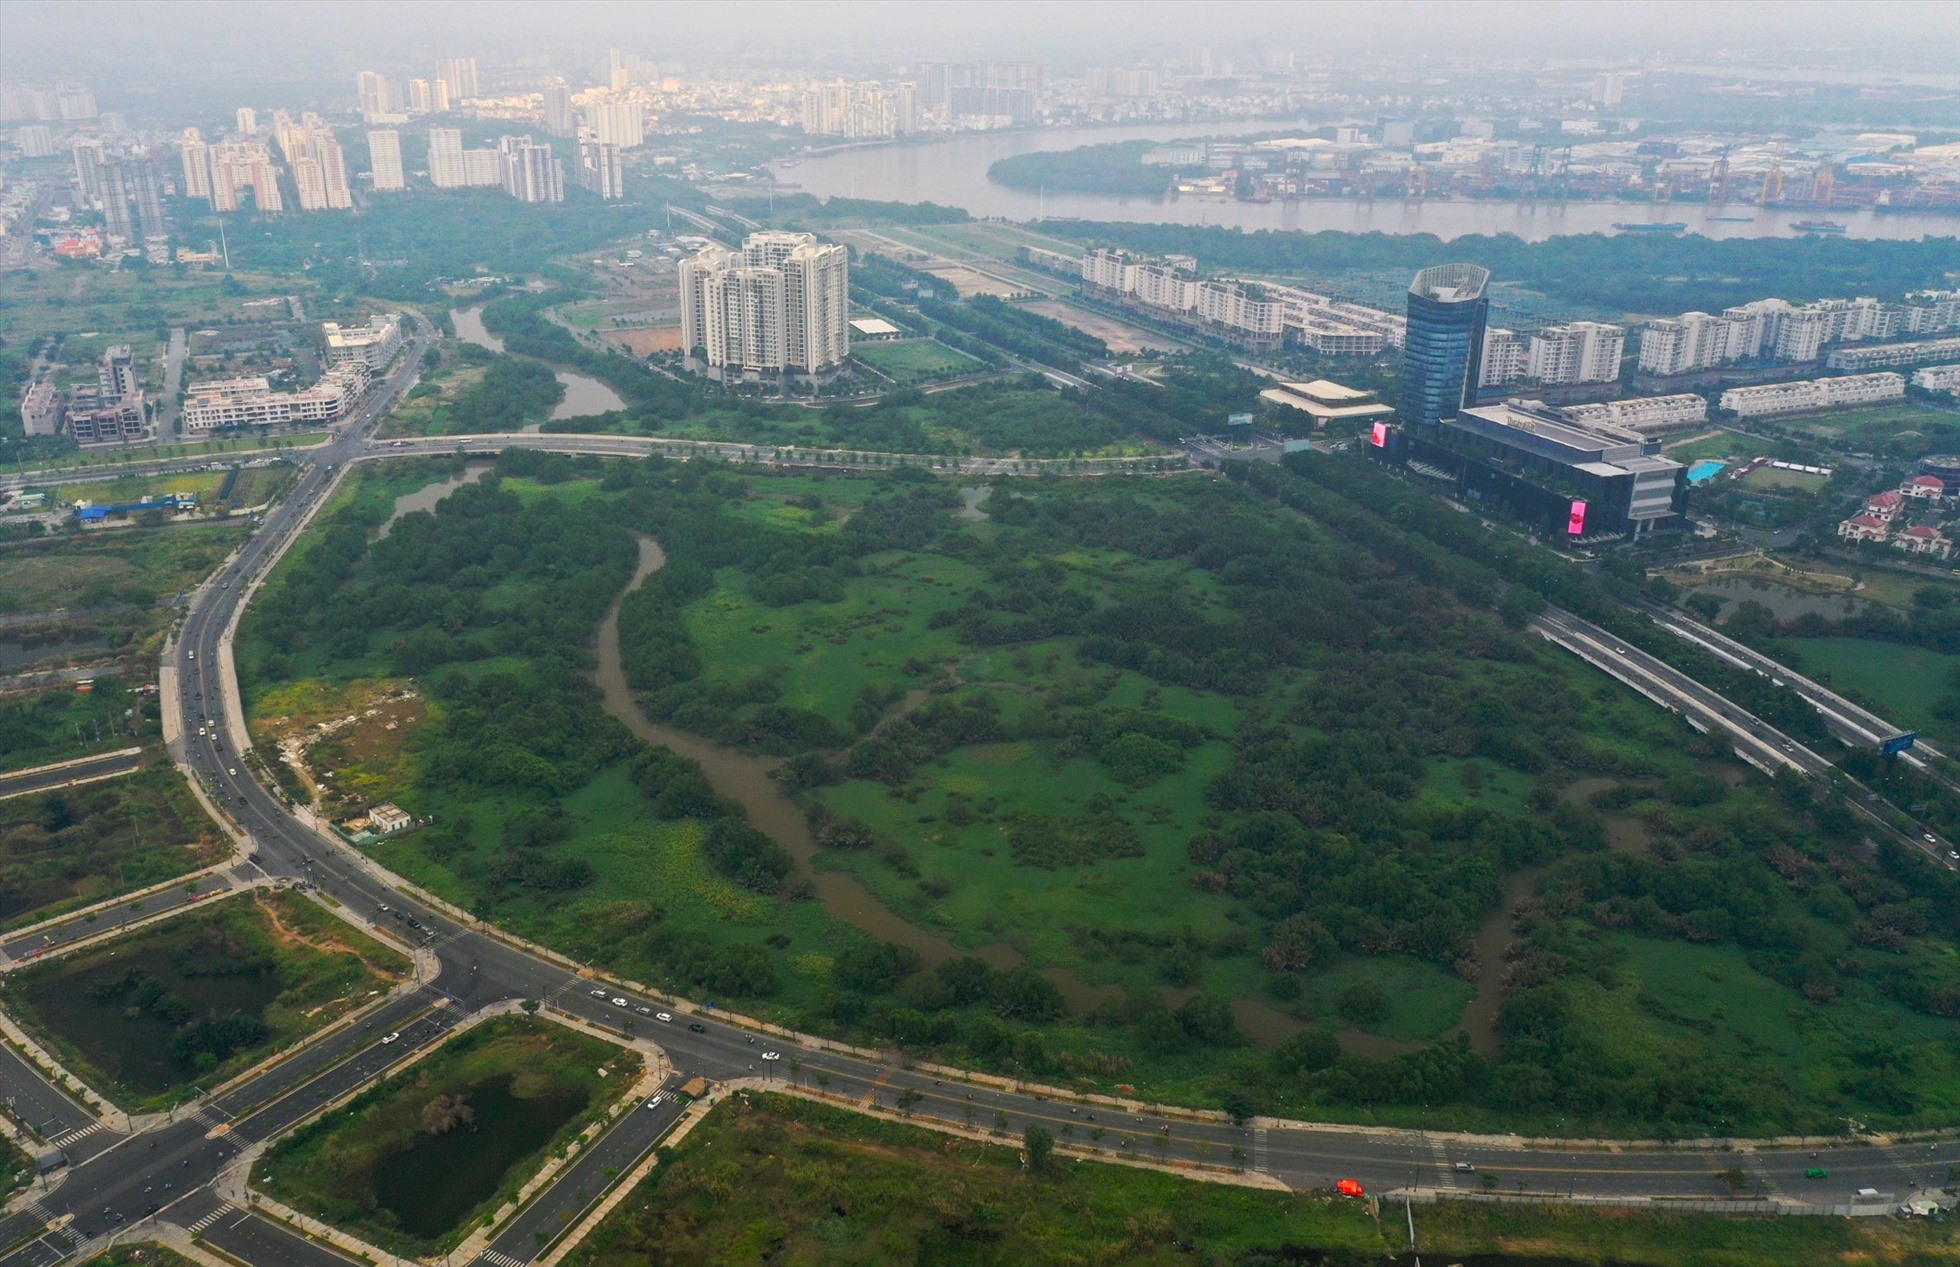 Đường Tố Hữu hoàn thành cơ bản so với năm 2018, hiện đã cho xe chạy. Đường dài 3km, rộng hơn 29m, có bốn làn xe, giao cắt với hai trục đường Nguyễn Cơ Thạch và Mai Chí Thọ.